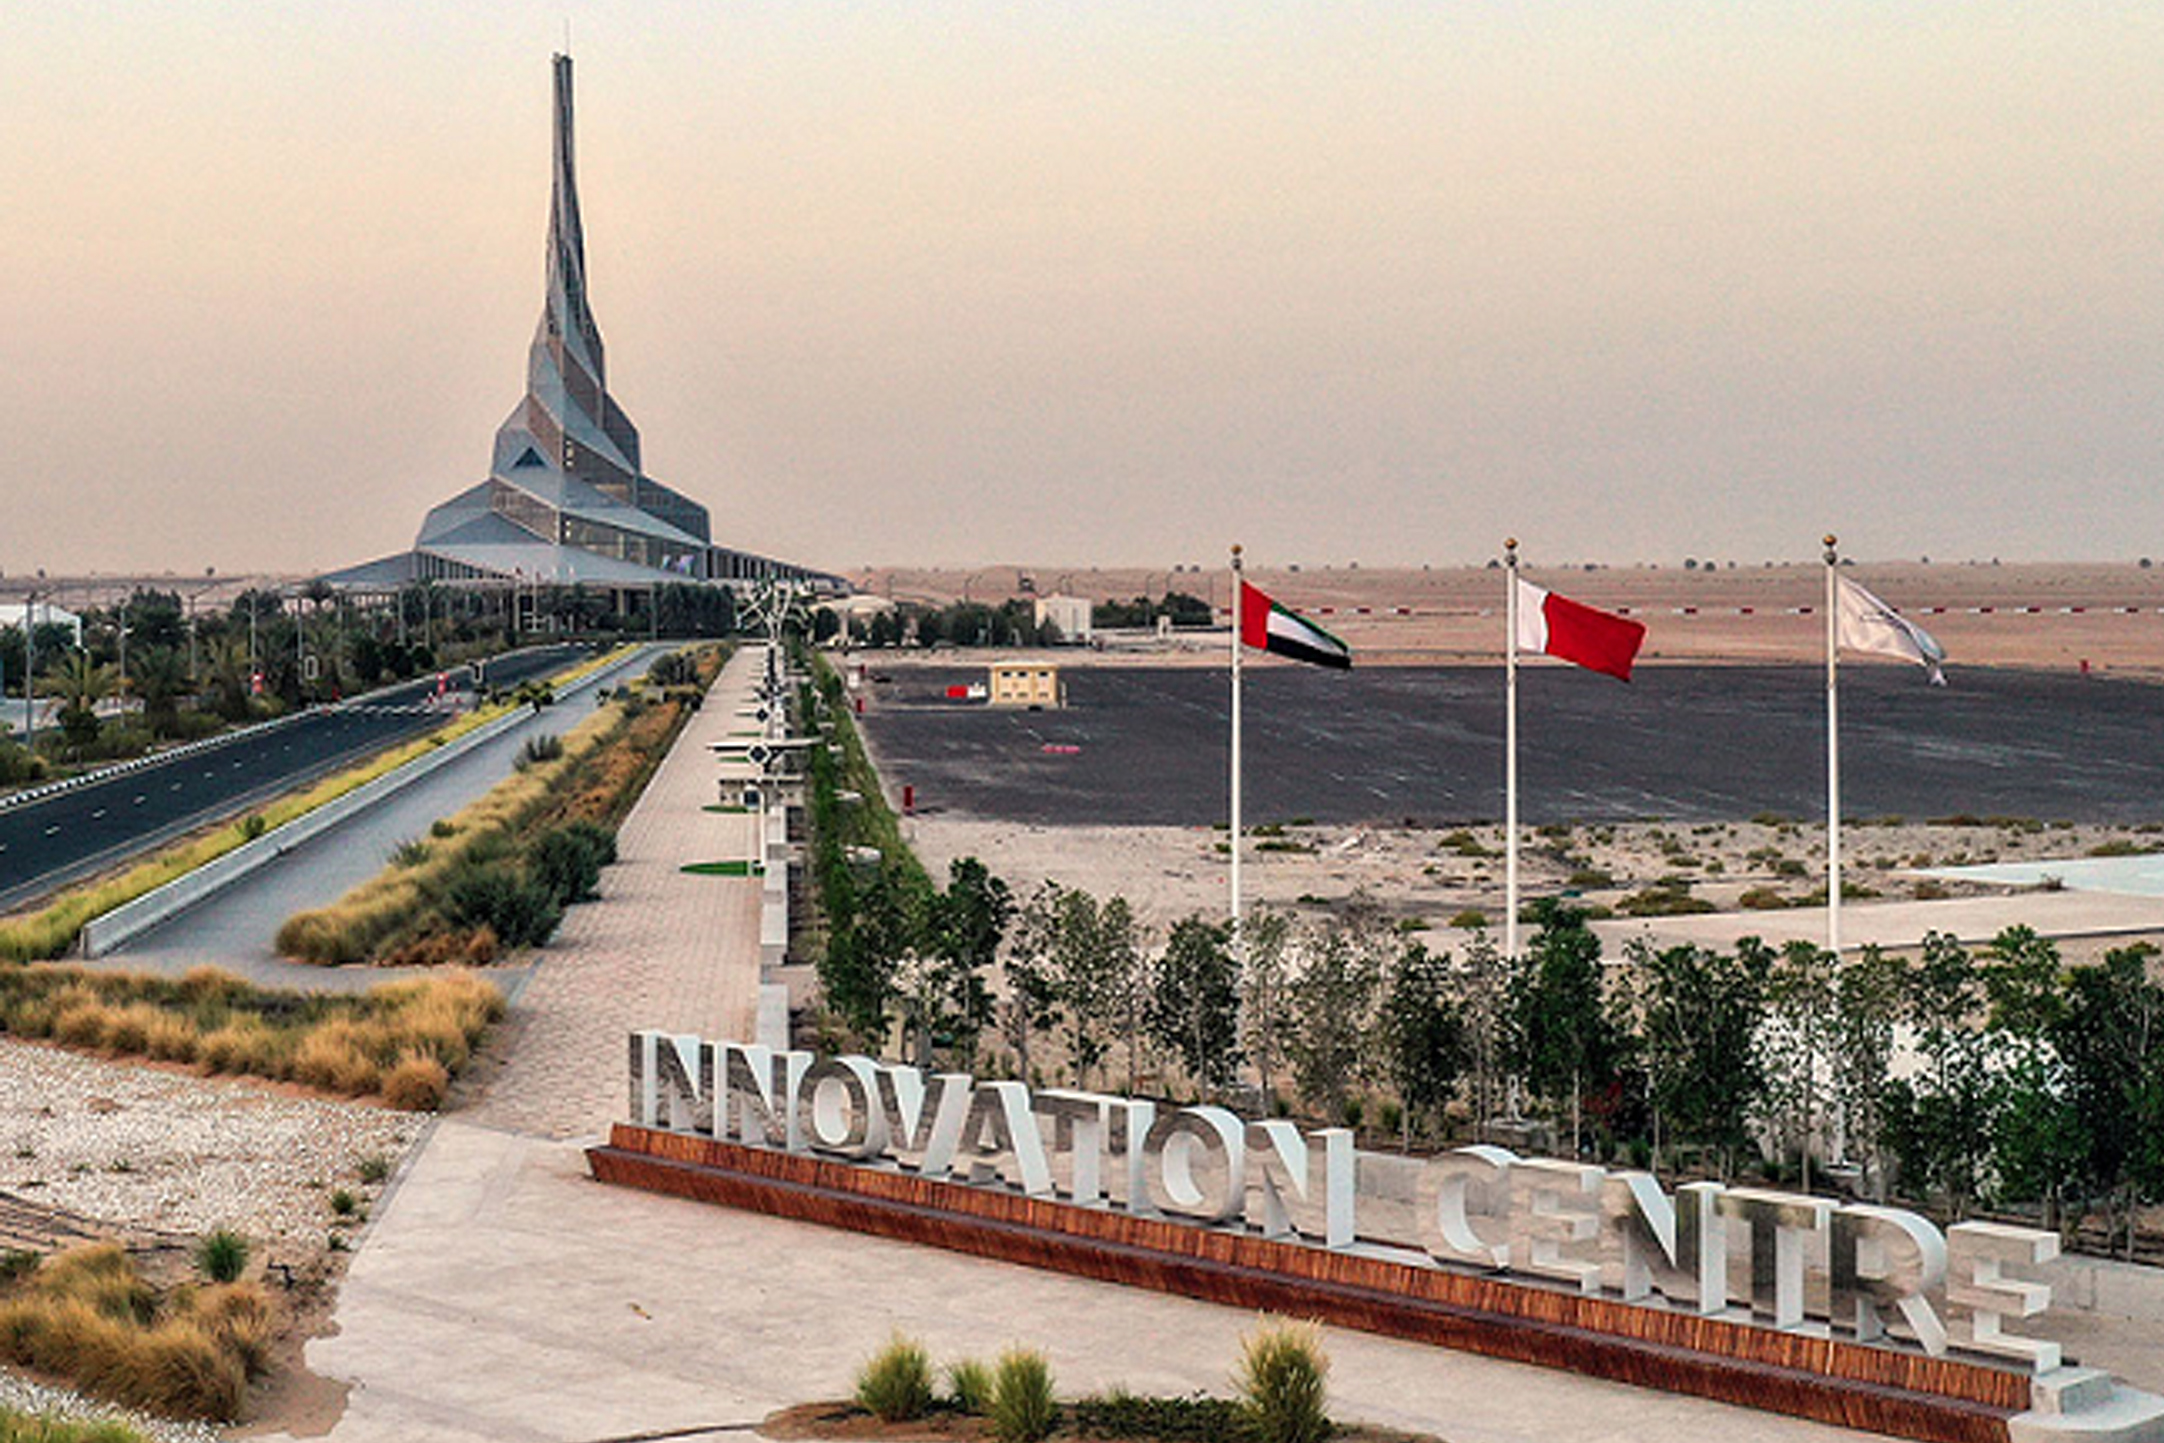 يعد مركز الابتكار التابع لهيئة كهرباء ومياه دبي منصة رائدة تعزز مكانة دبي كمركز عالمي للاستدامة والمبادرات الخضراء